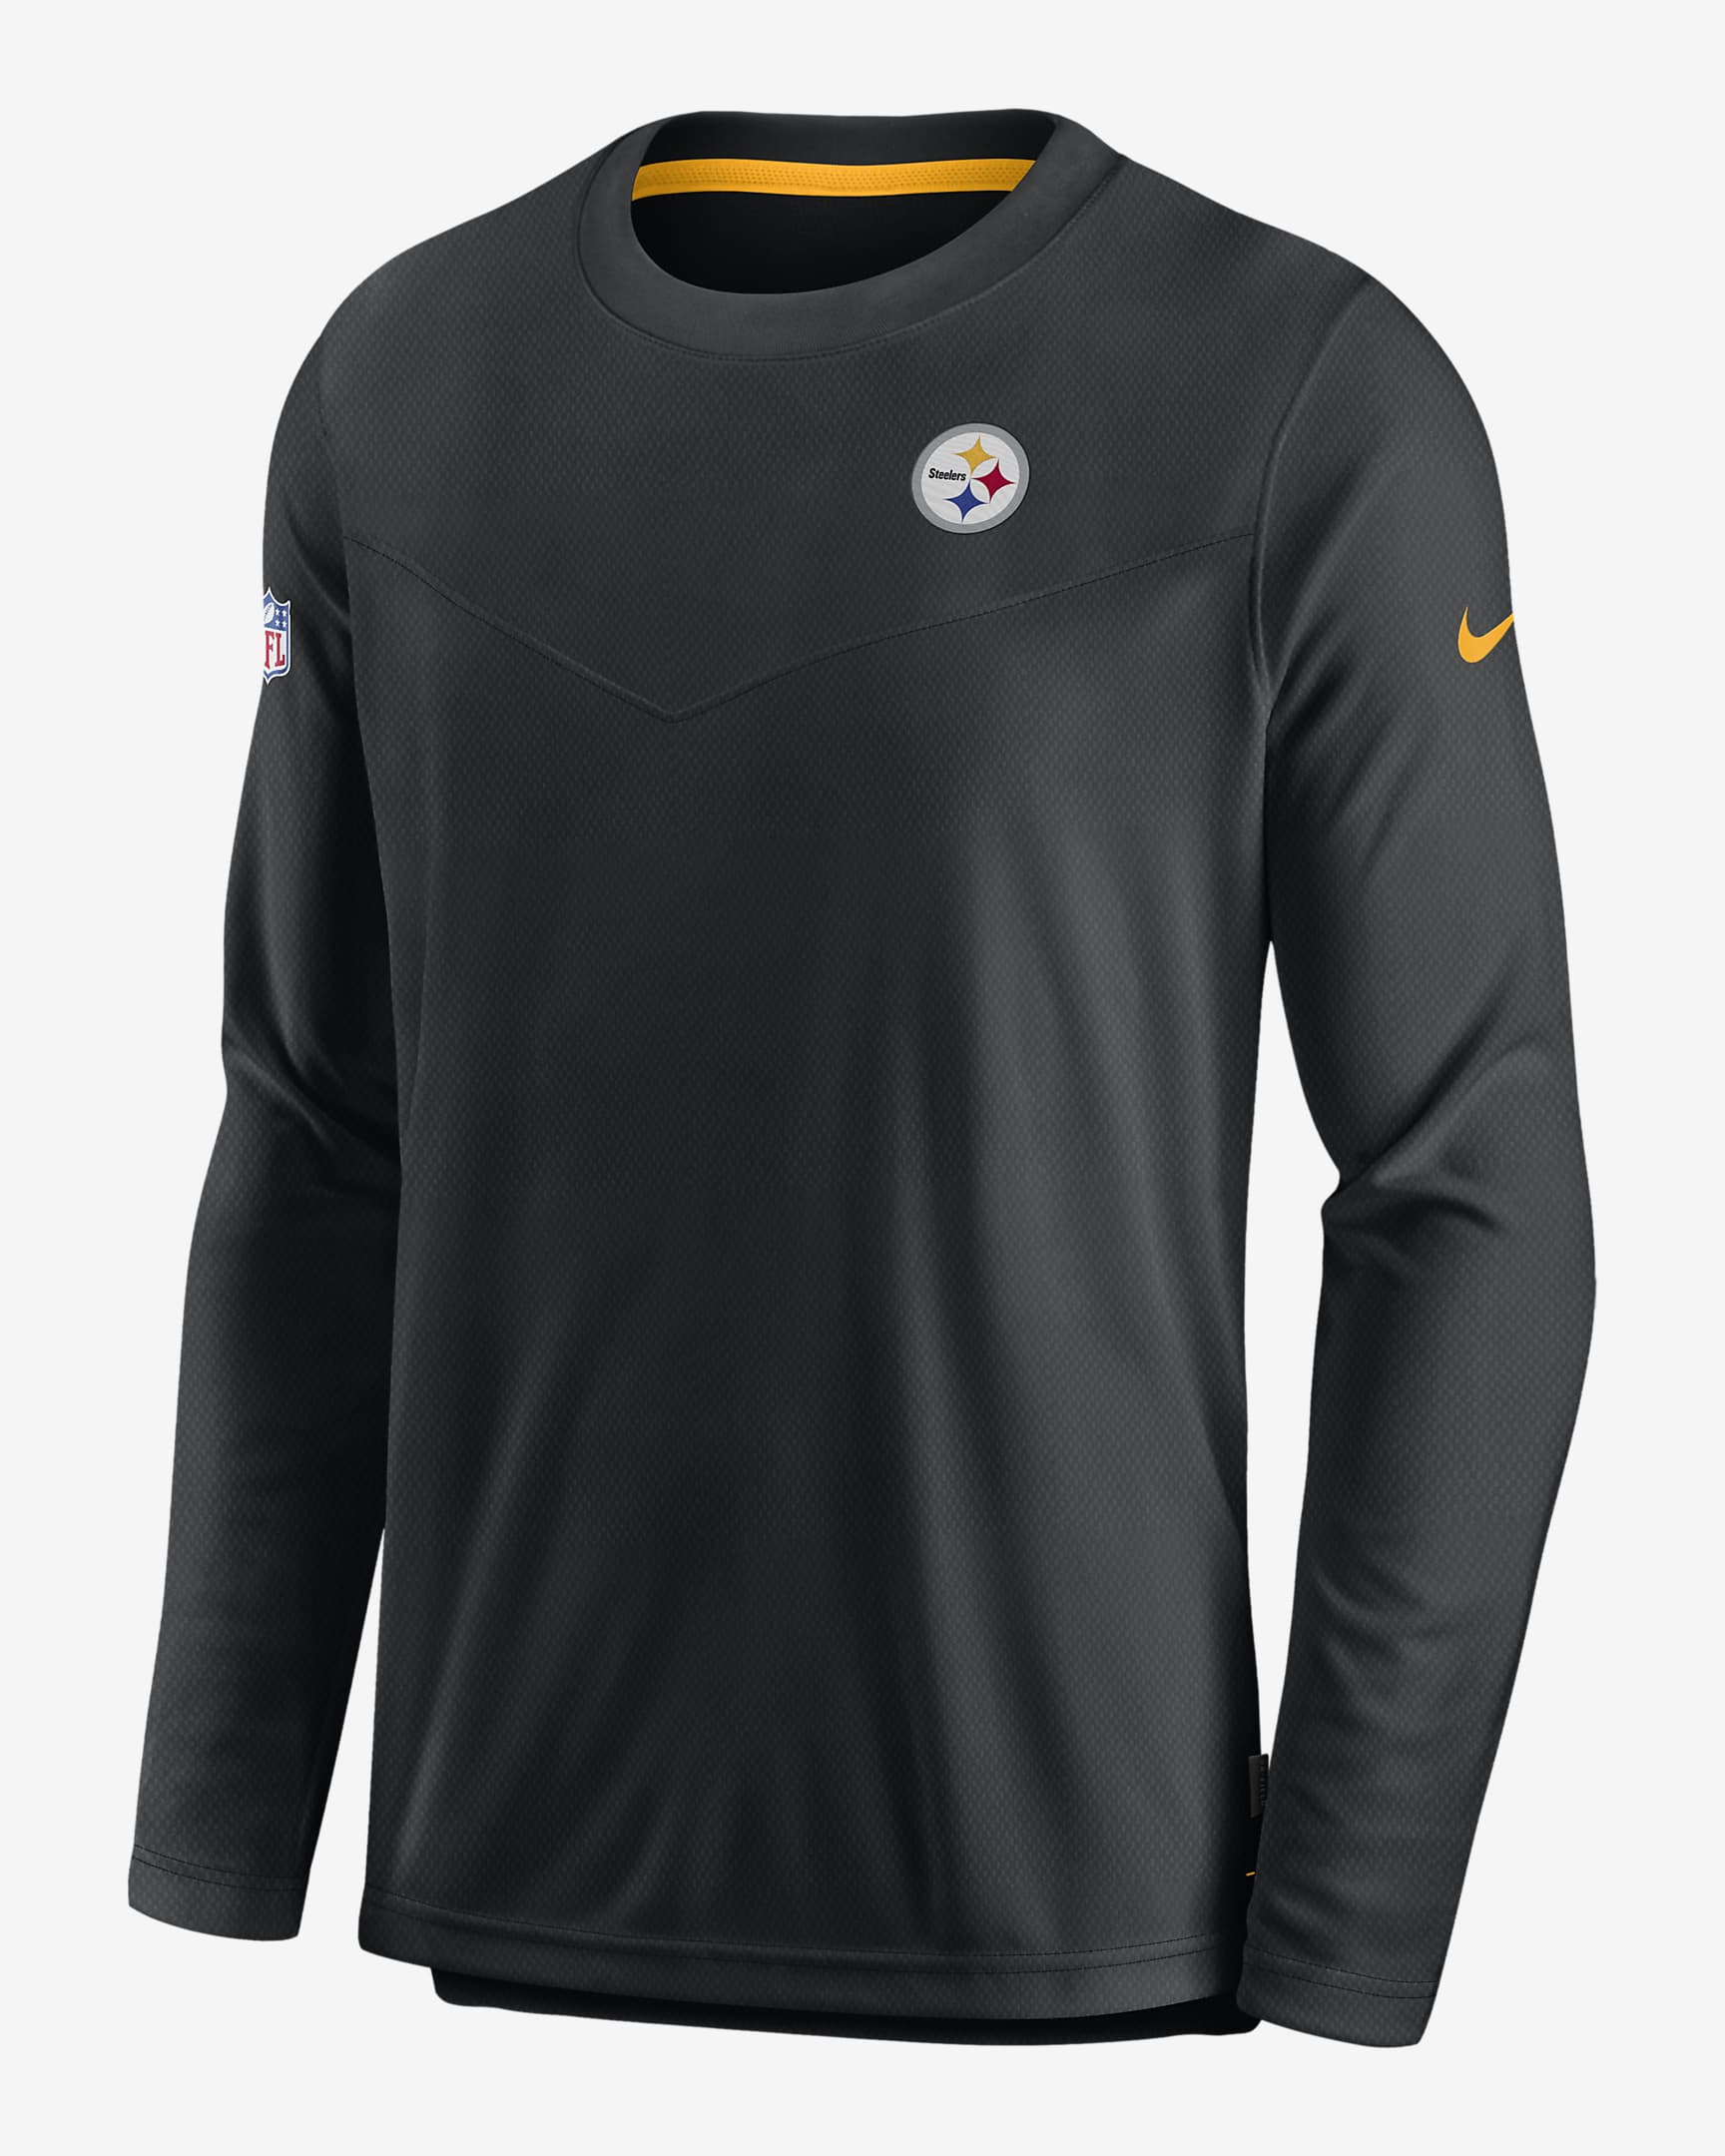 Nike Dri-FIT Lockup (NFL Pittsburgh Steelers) Men's Long-Sleeve Top ...